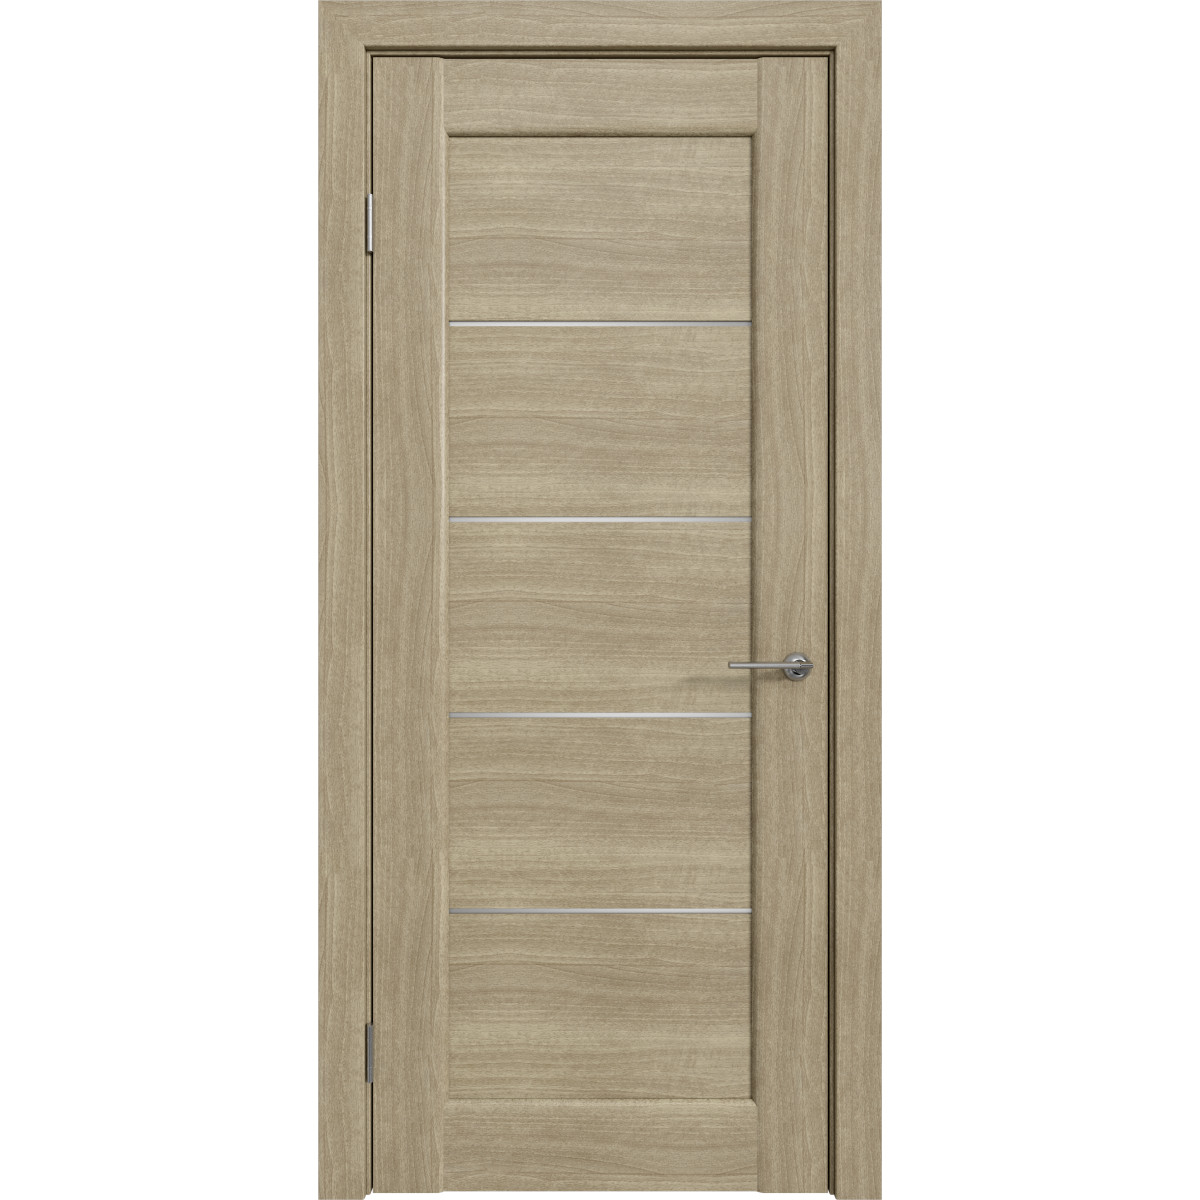 Дверь межкомнатная остеклённая Дельта горизонтальная 80x200 см, ПВХ, цвет ольха серебряная, с фурнитурой